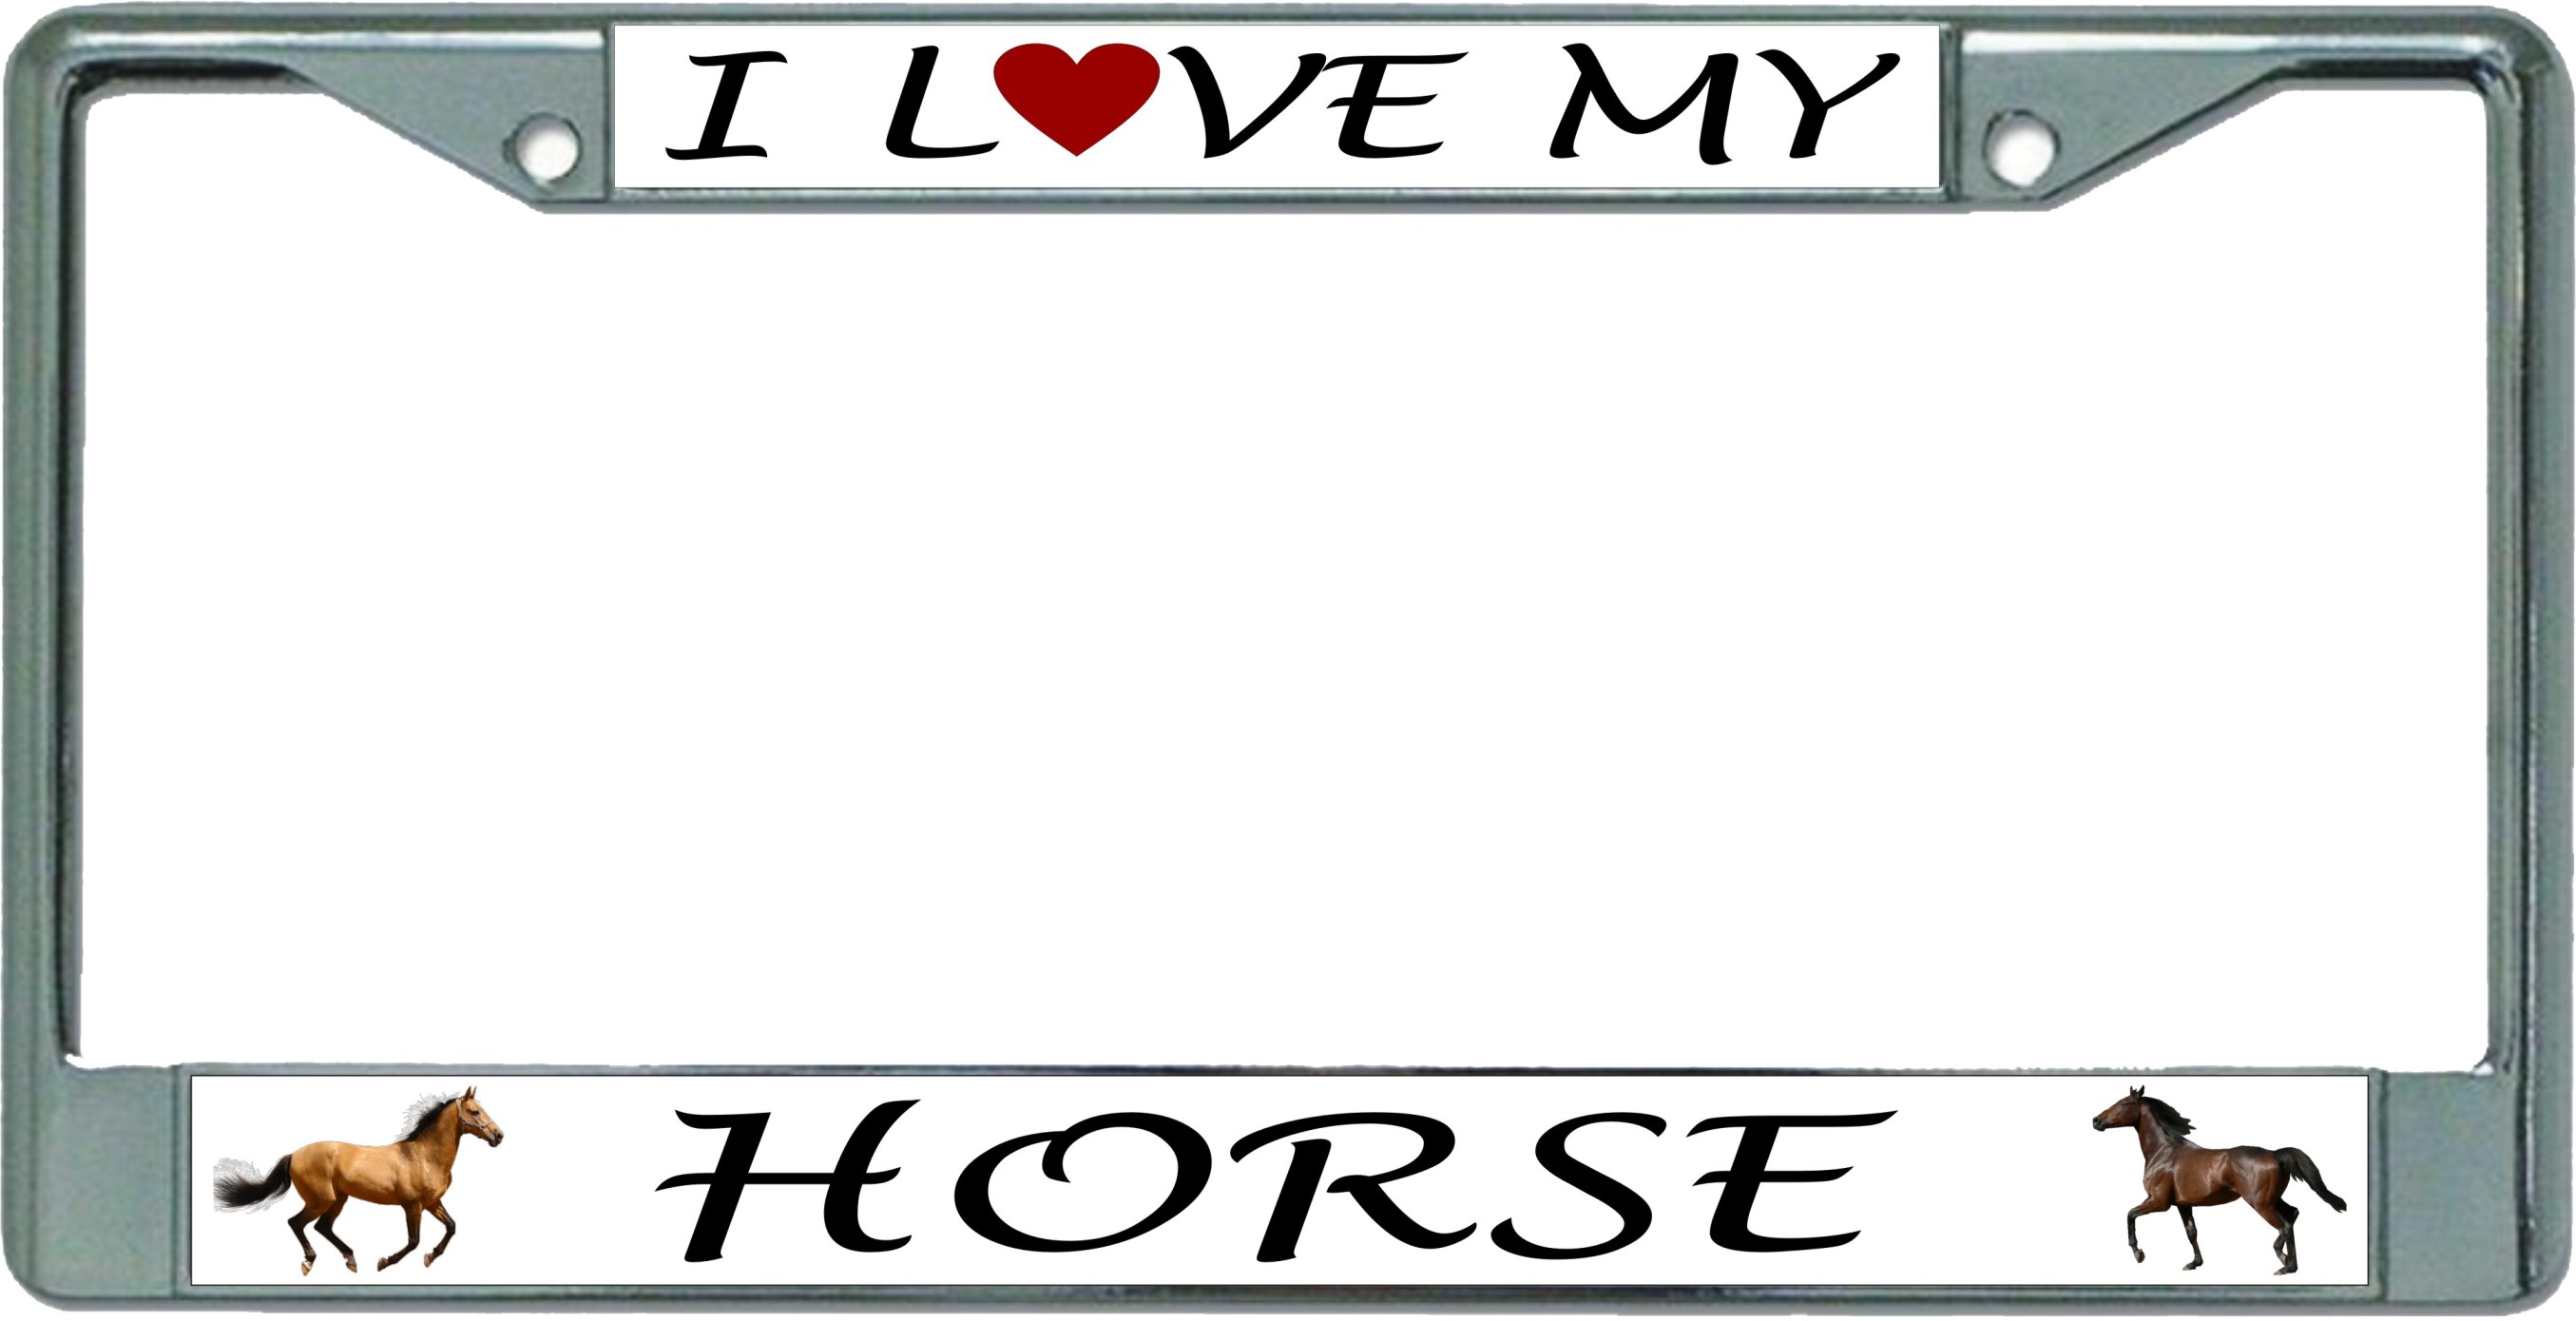 I Love My Horse Chrome License Plate FRAME